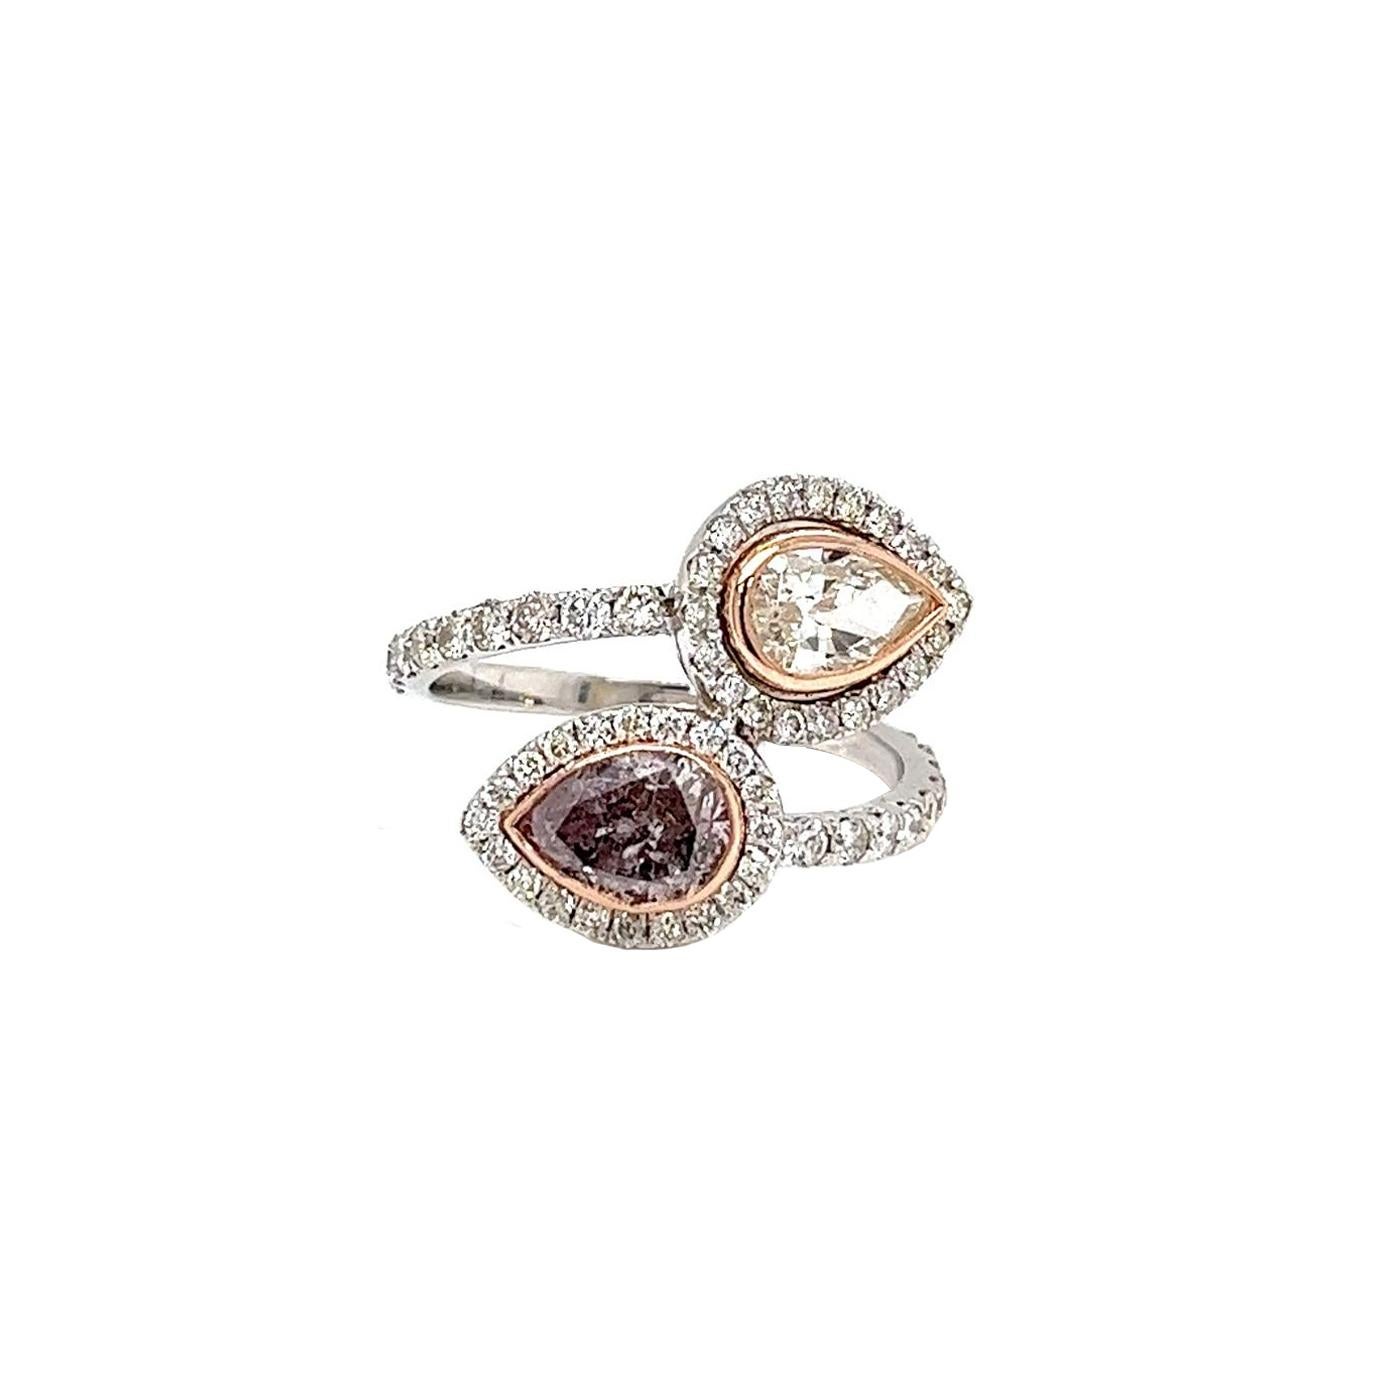 Erleben Sie den Inbegriff von Eleganz mit diesem natürlichen Fancy Purplish Pink Diamond Ring. Im Mittelpunkt stehen zwei bezaubernde birnenförmige Diamanten mit einem Gesamtkaratgewicht von 1,01 und einer Reinheit von I1 und SI1, die ihren zarten